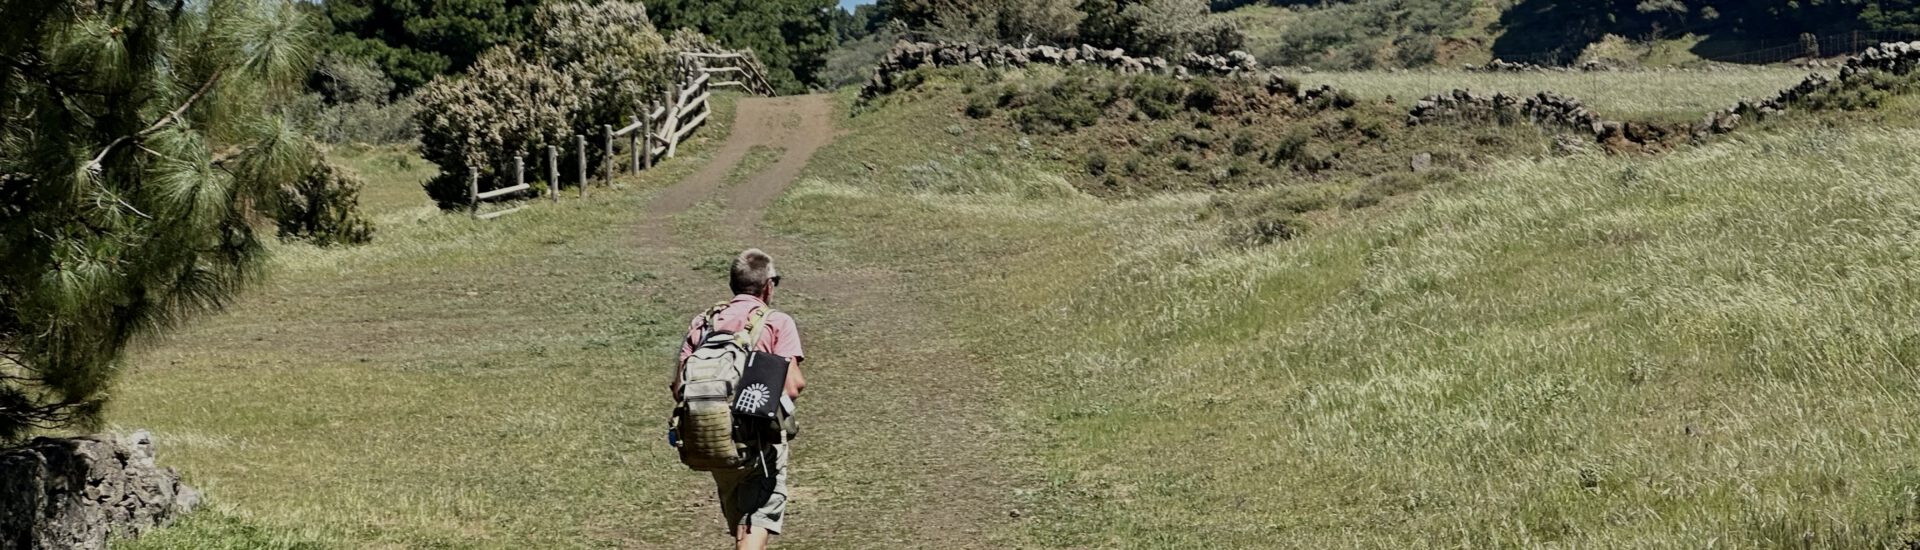 Wanderer auf grünen Wiesen - Wanderweg Richtung Meseta de Nisdafe